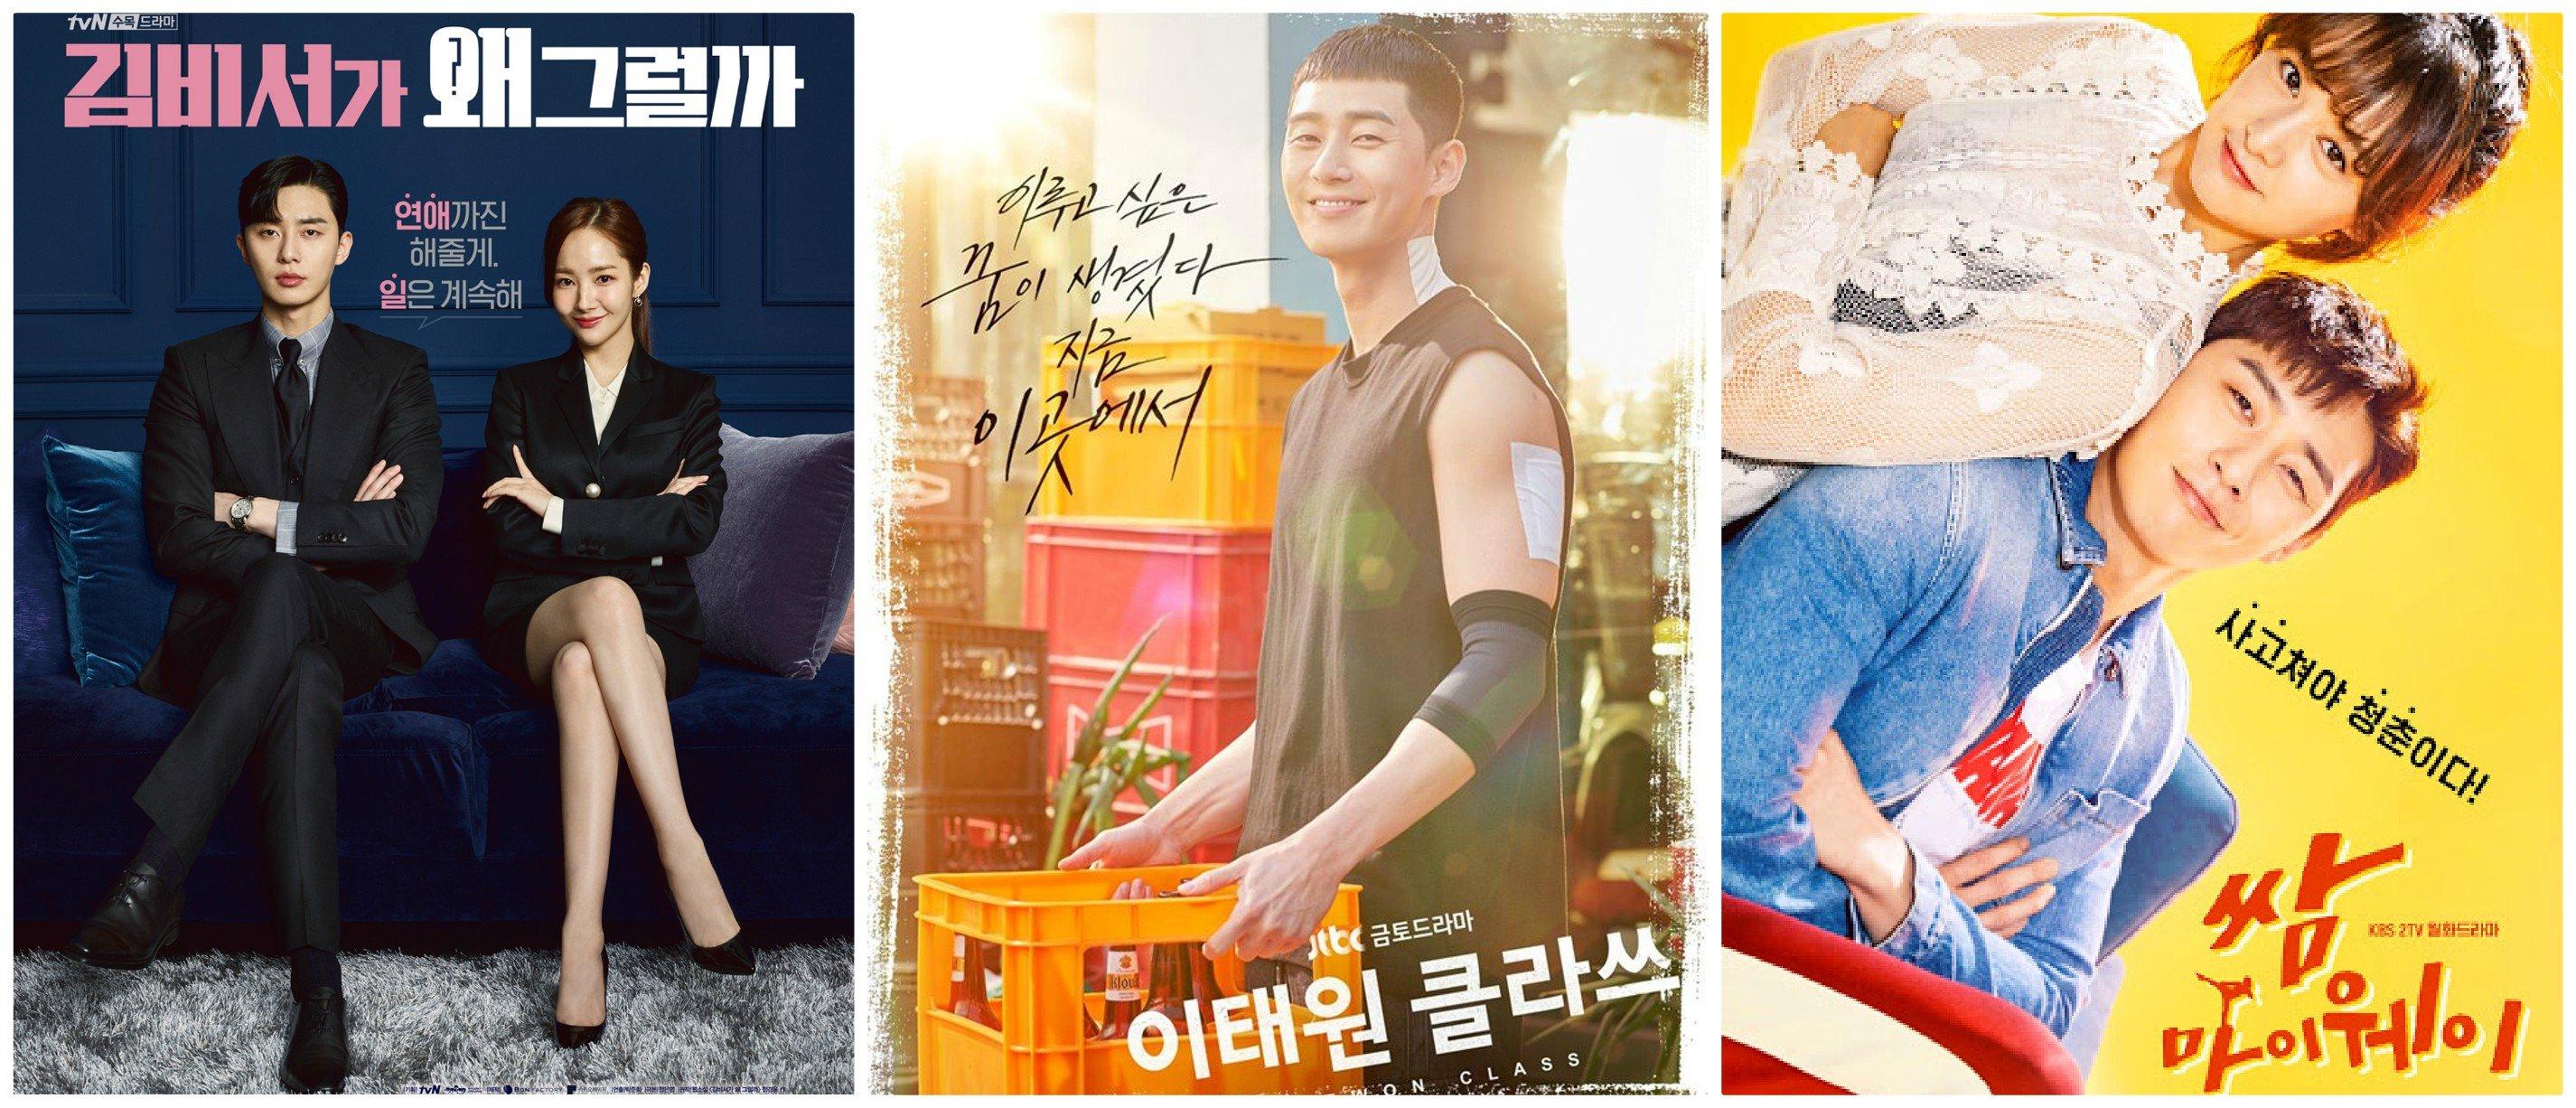 Trước Itaewon Class, ông chủ Park Seo Joon đã bỏ túi nhiều bộ phim nổi tiếng